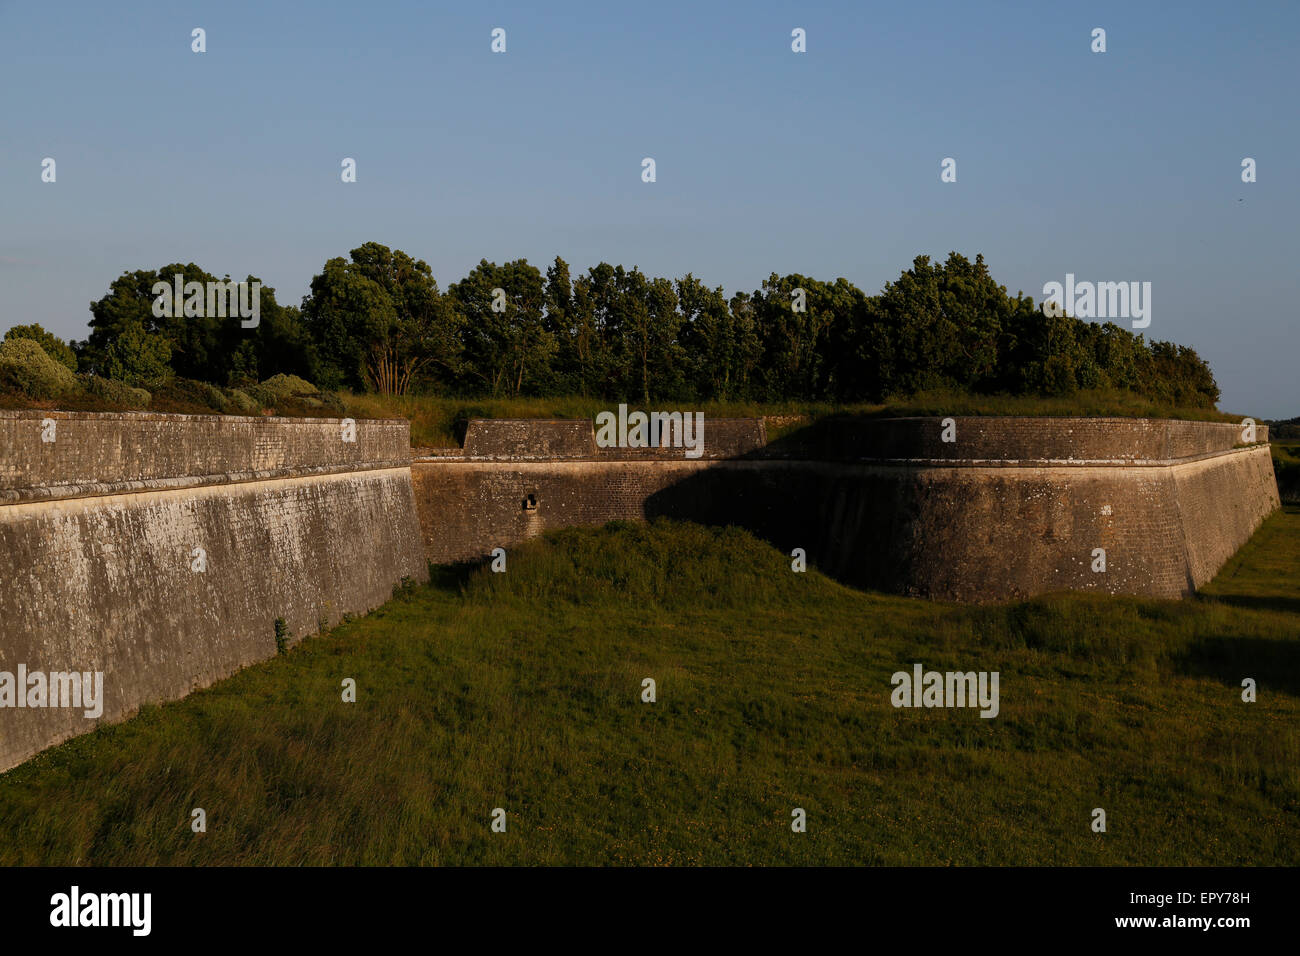 Les murs de la ville de Saint-Martin-de-Ré, Charente-Maritime, France. Banque D'Images